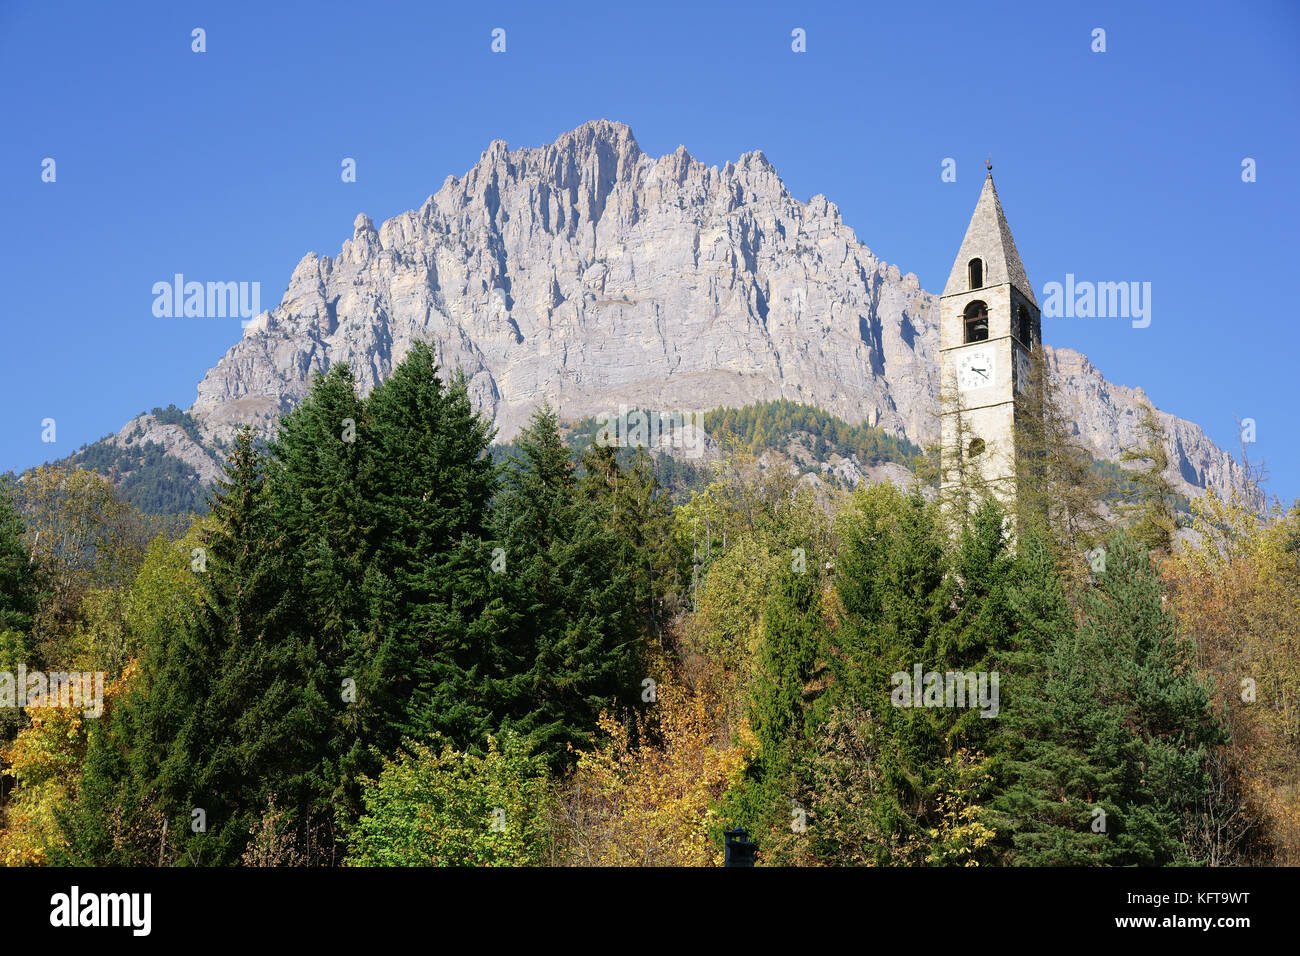 Campanile con colori autunnali in primo piano e una massiccia scogliera (Monte Bersaio) sullo sfondo. Sambuco, Provincia di Cuneo, Piemonte, Italia. Foto Stock